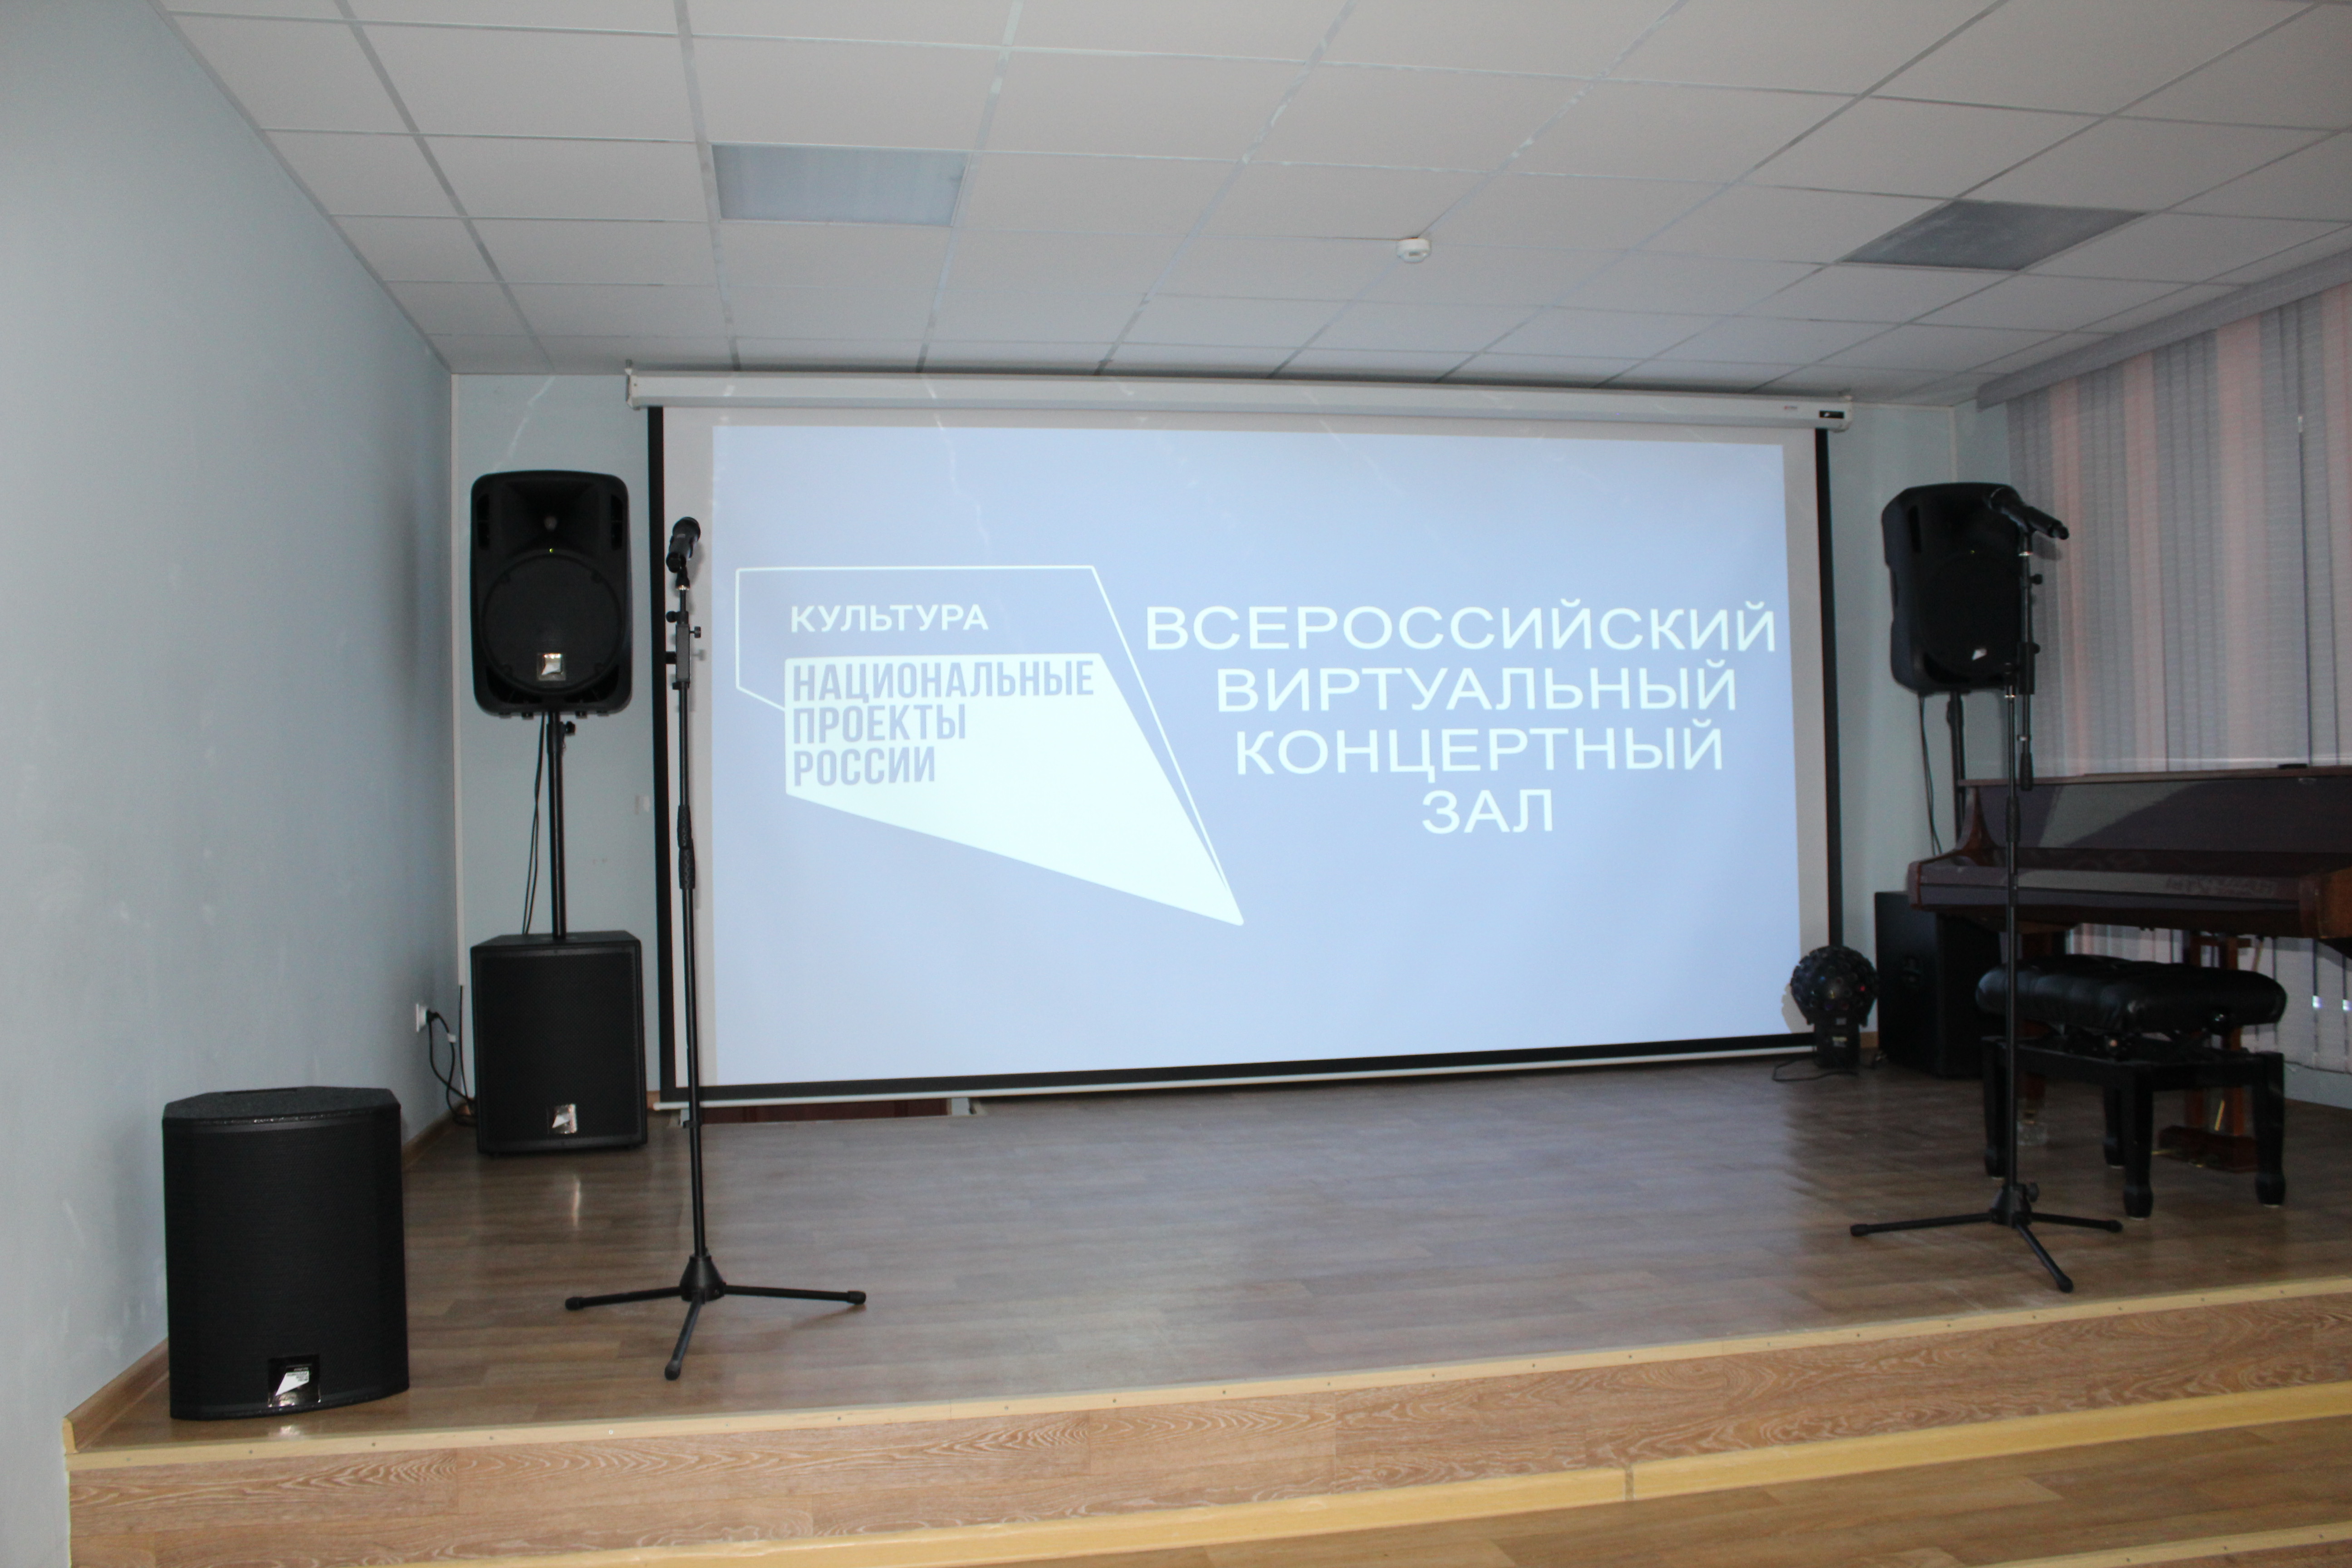 В Батайске по нацпроекту "Культура" откроют первый в городе виртуальный концертный зал